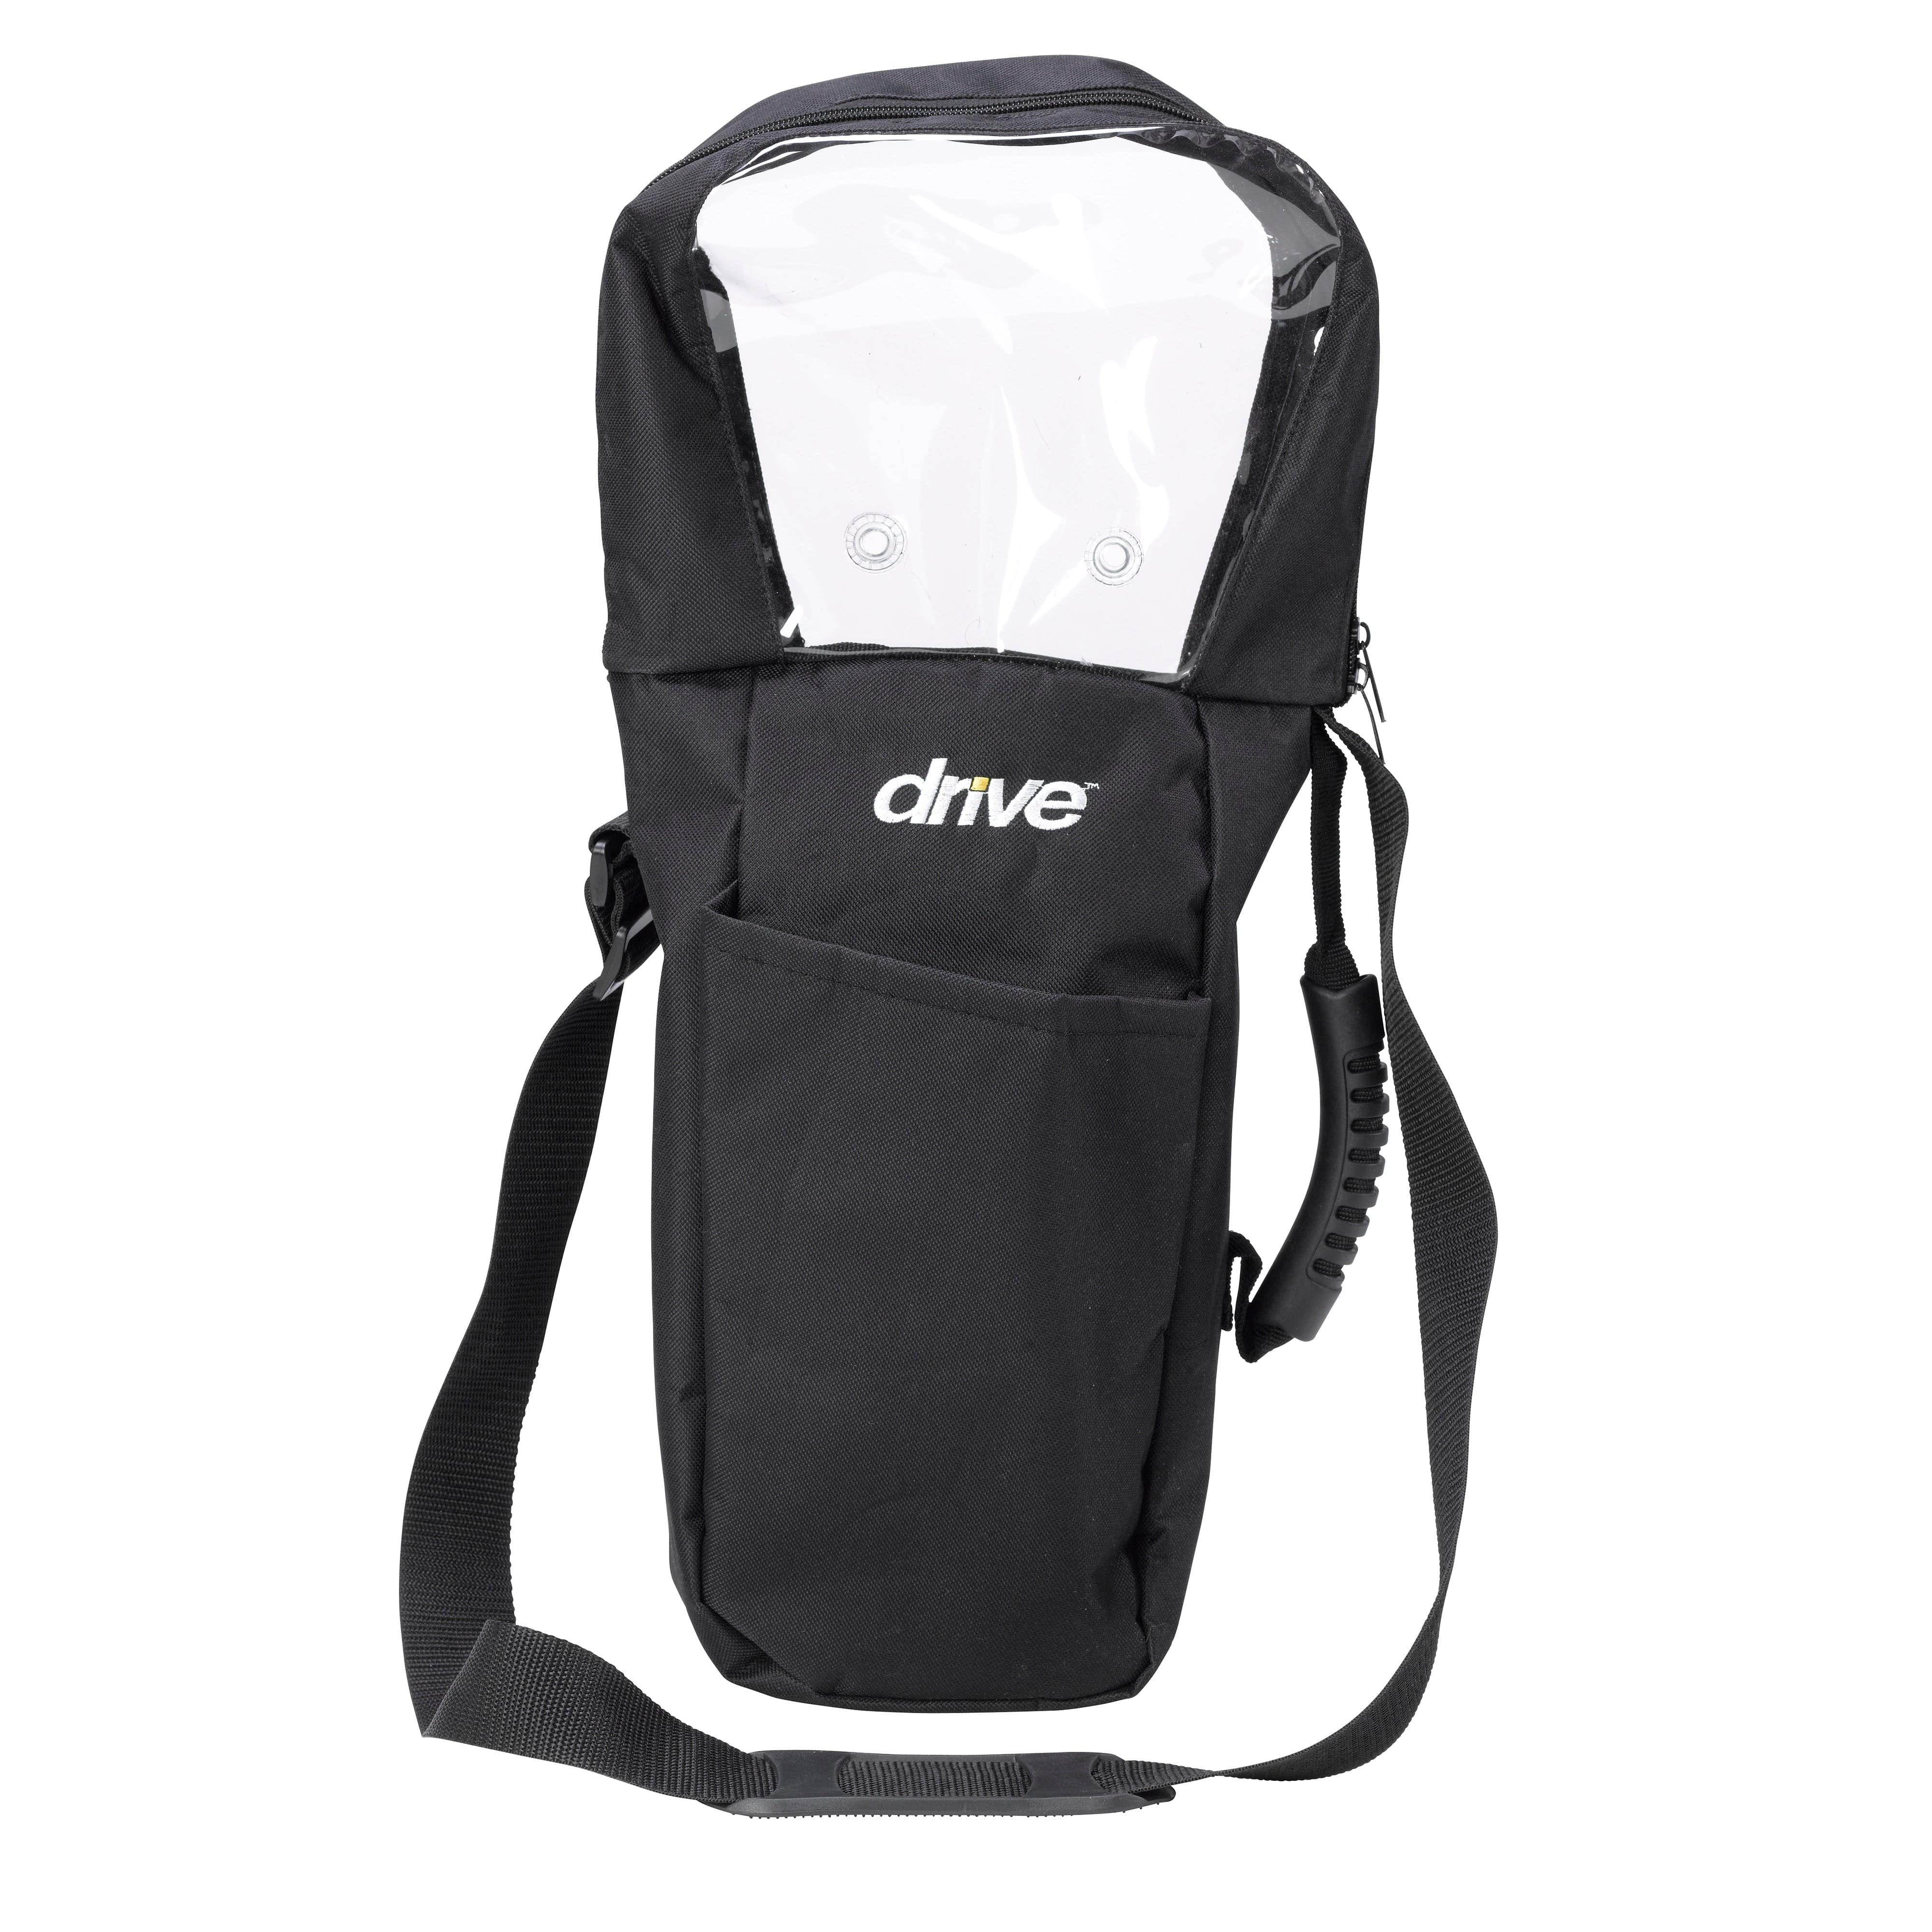 Drive Medical Respiratory Drive Medical Oxygen Cylinder Shoulder Carry Bag